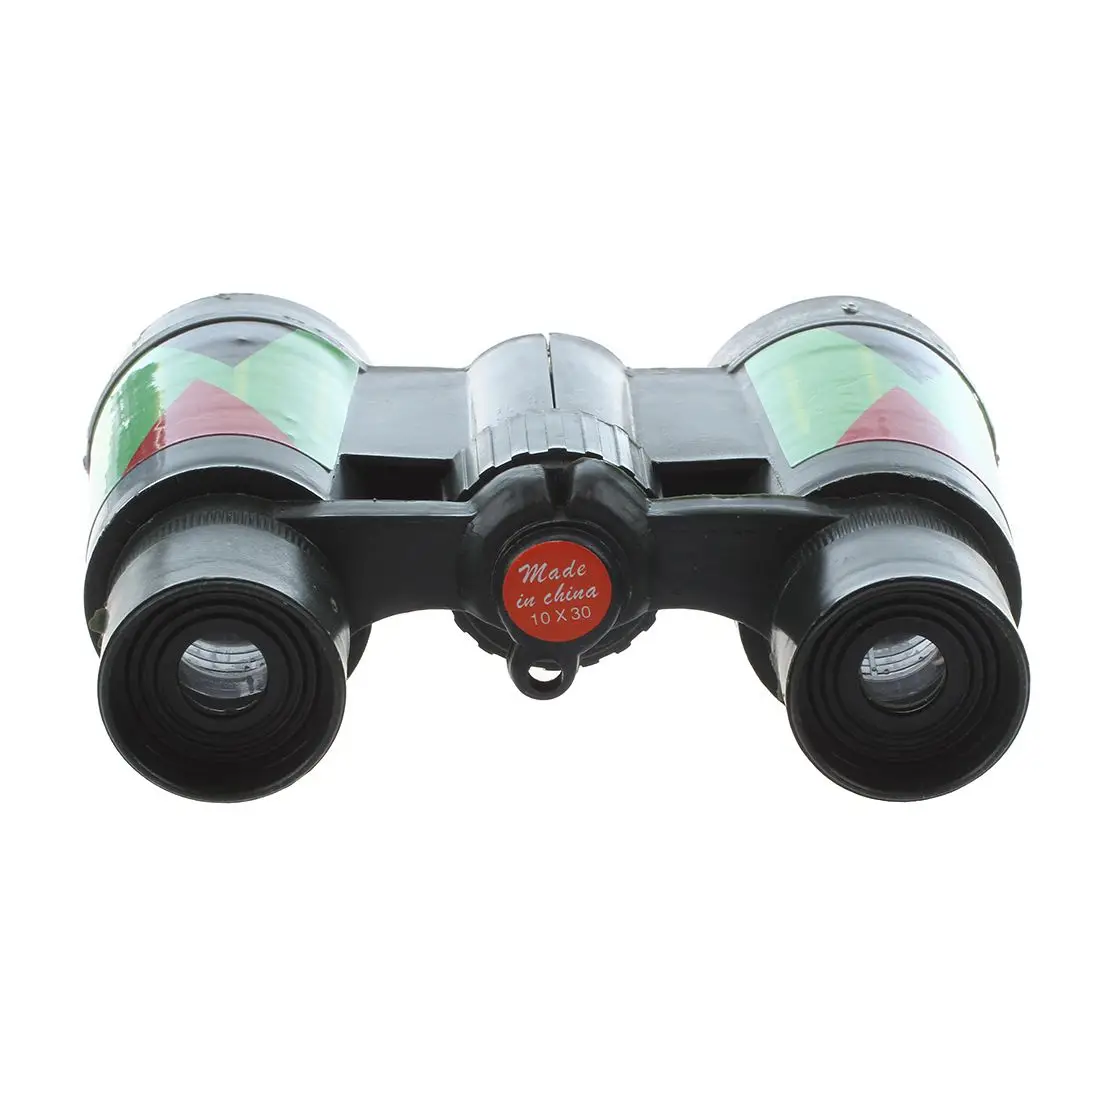 SODIAL (R) ArmyGreen пластиковая 10x30 мм Игрушка бинокль для детей